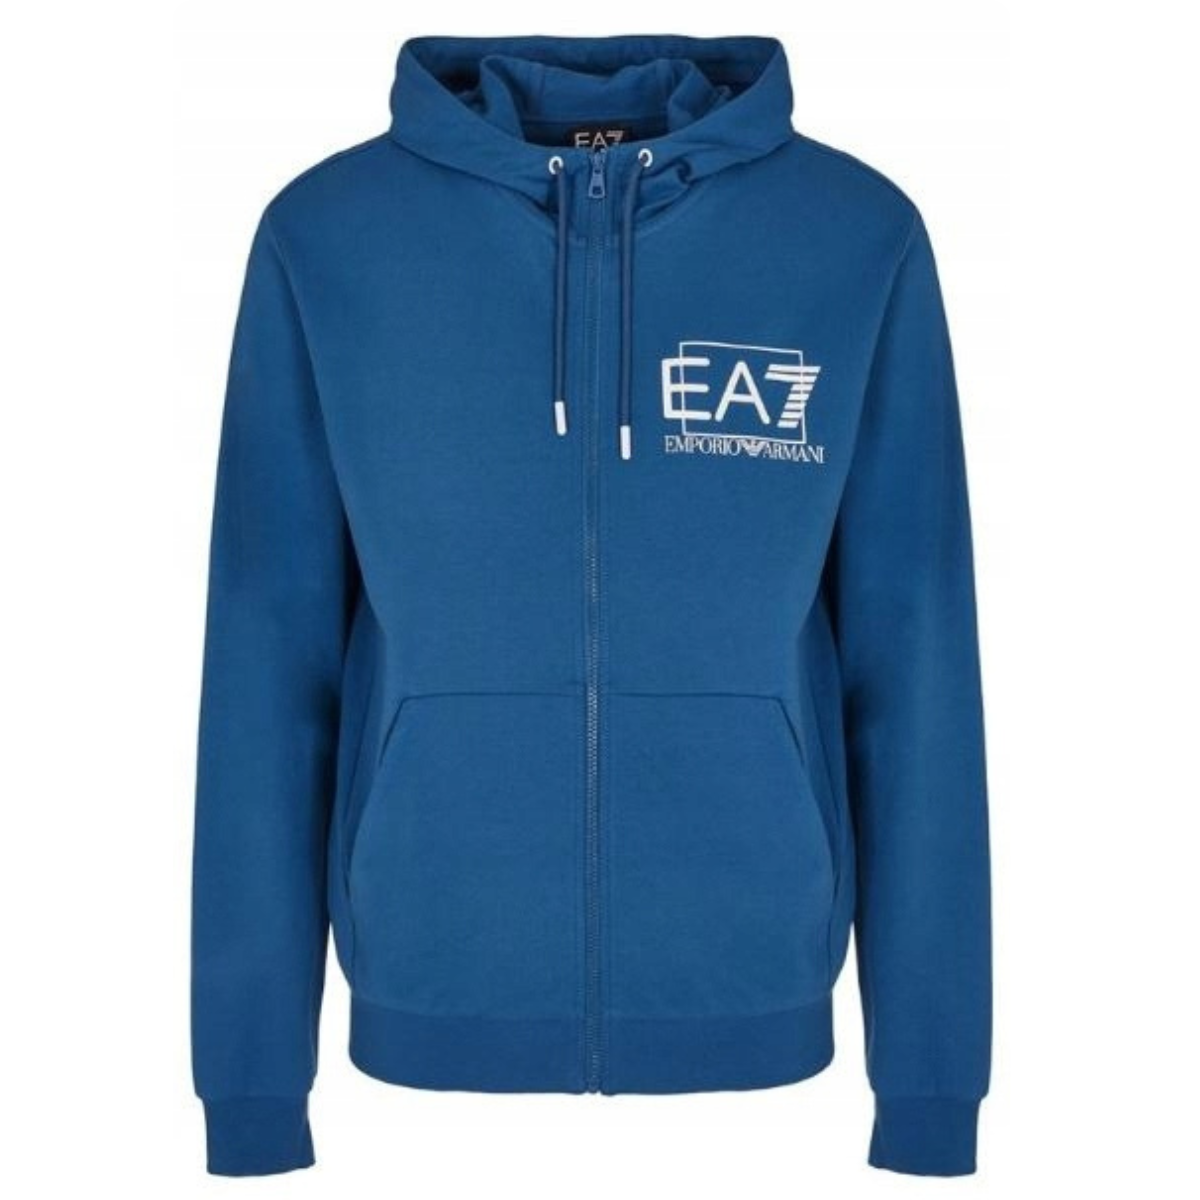 EA7 Emporio Armani - Sweatshirt - Blue